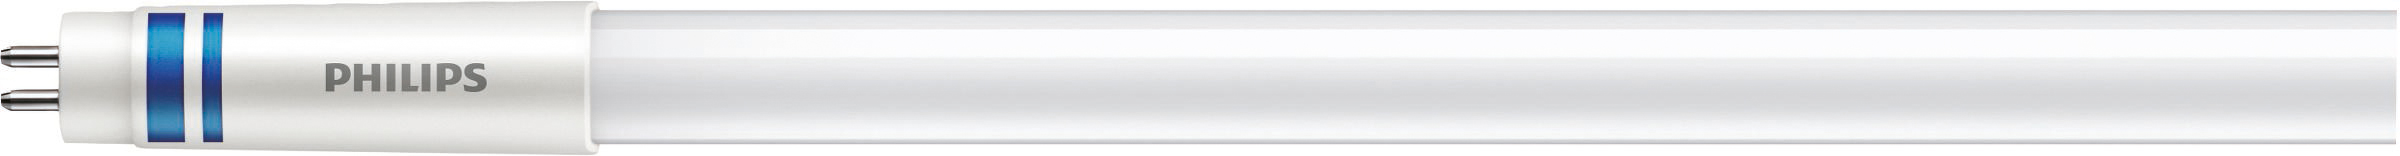 Philips Lighting LED-Tube T5 f. EVG G5, 865, 1449mm MAS LEDtube#74961300 günstig online kaufen